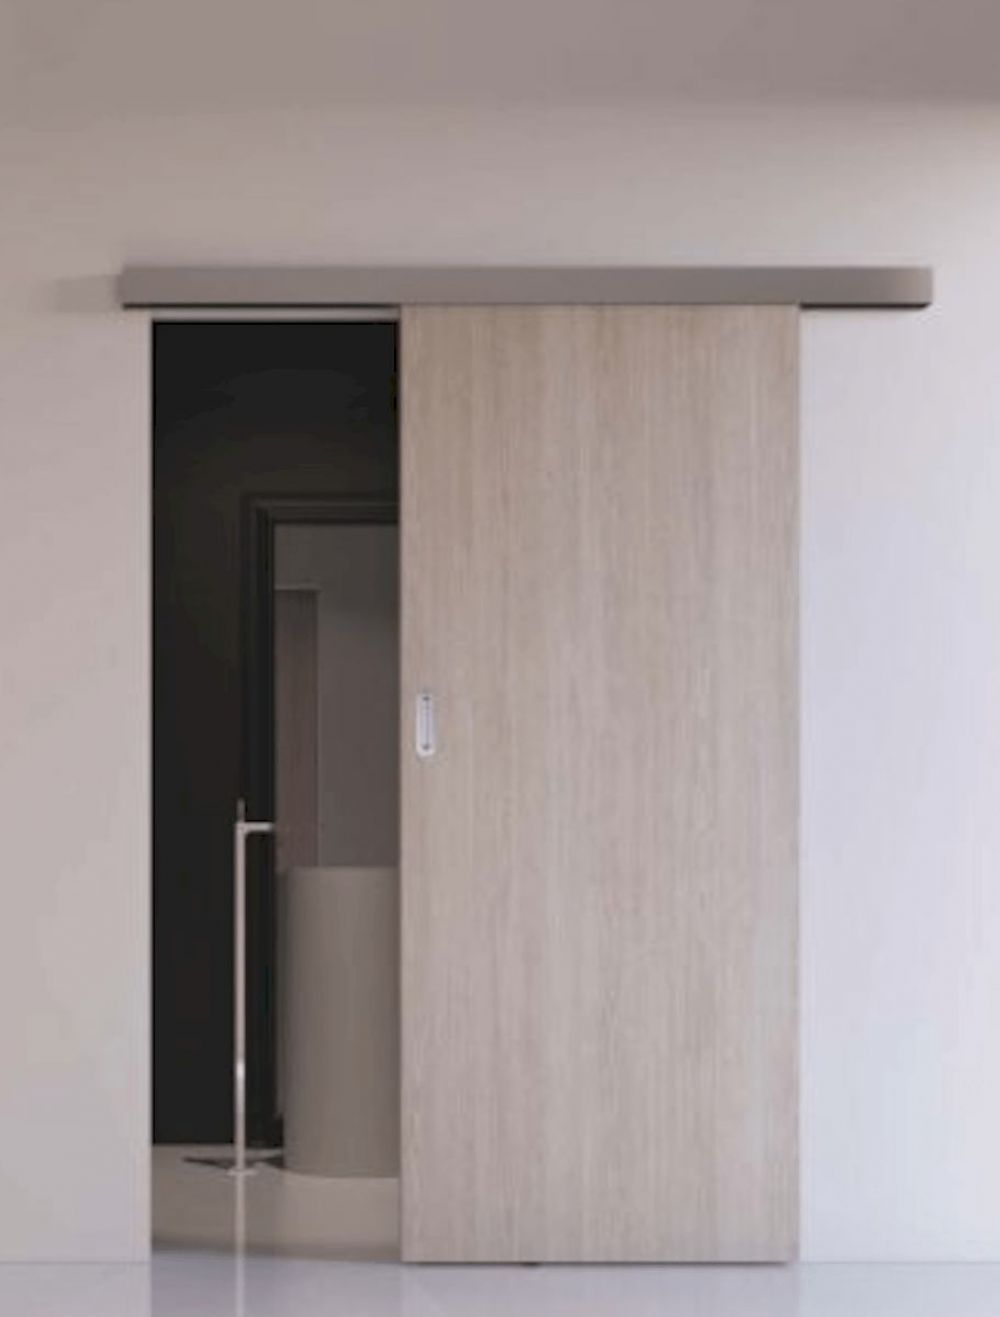 Posuvný systém na stěnu Naturel pro dveře 90 cm, hliník, POSUVSPA90 - Siko - koupelny - kuchyně